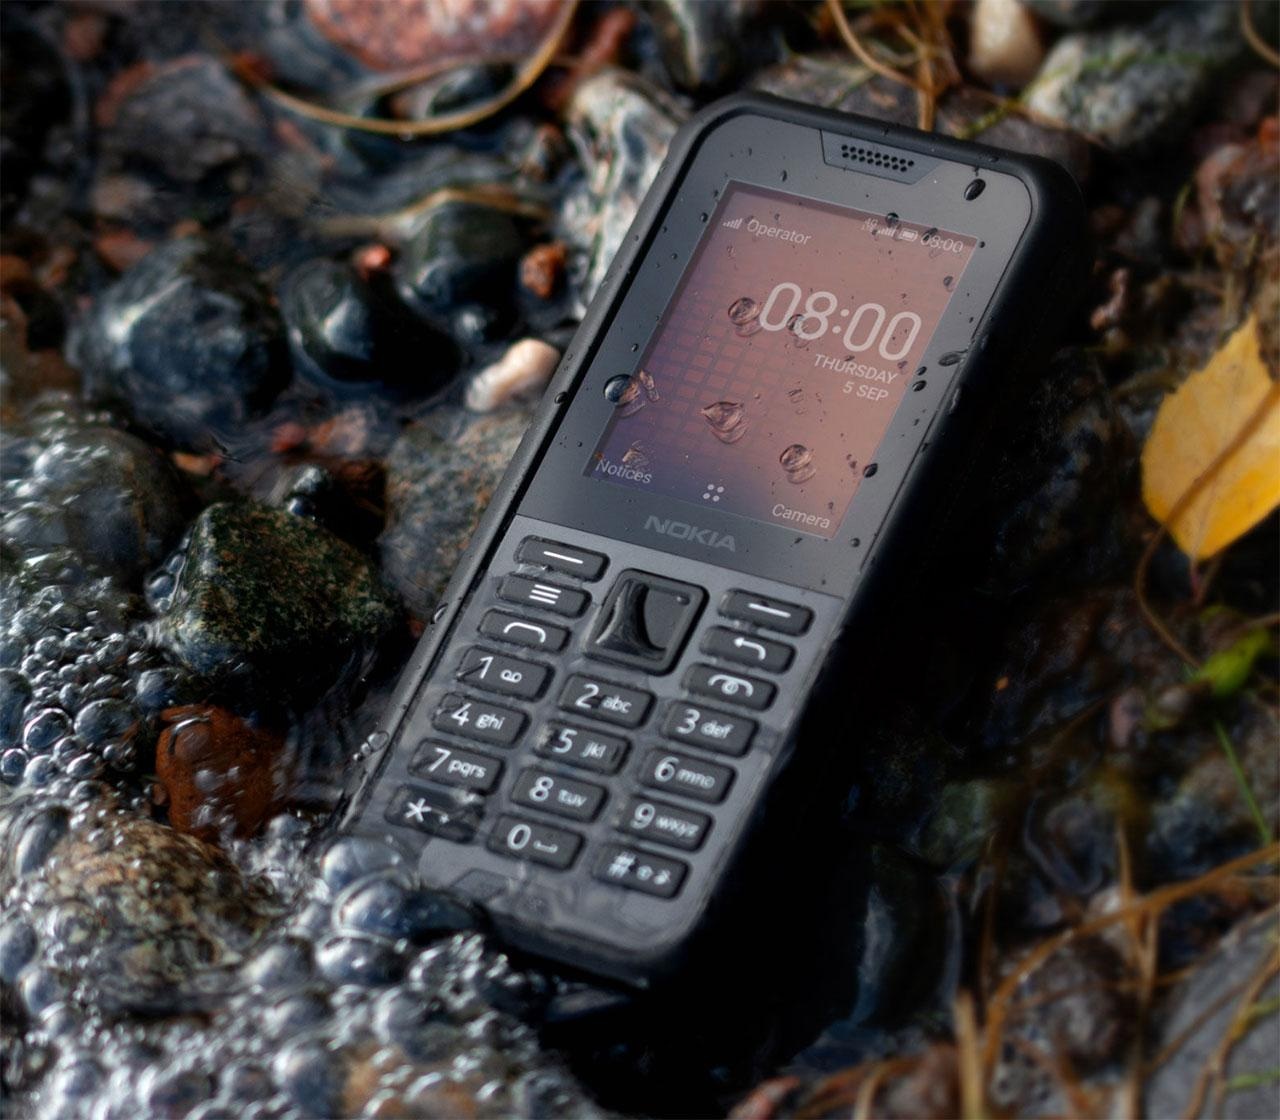 Cận cảnh chiếc điện thoại nồi đồng cối đá vừa ra mắt của Nokia, giá gần 3 triệu đồng